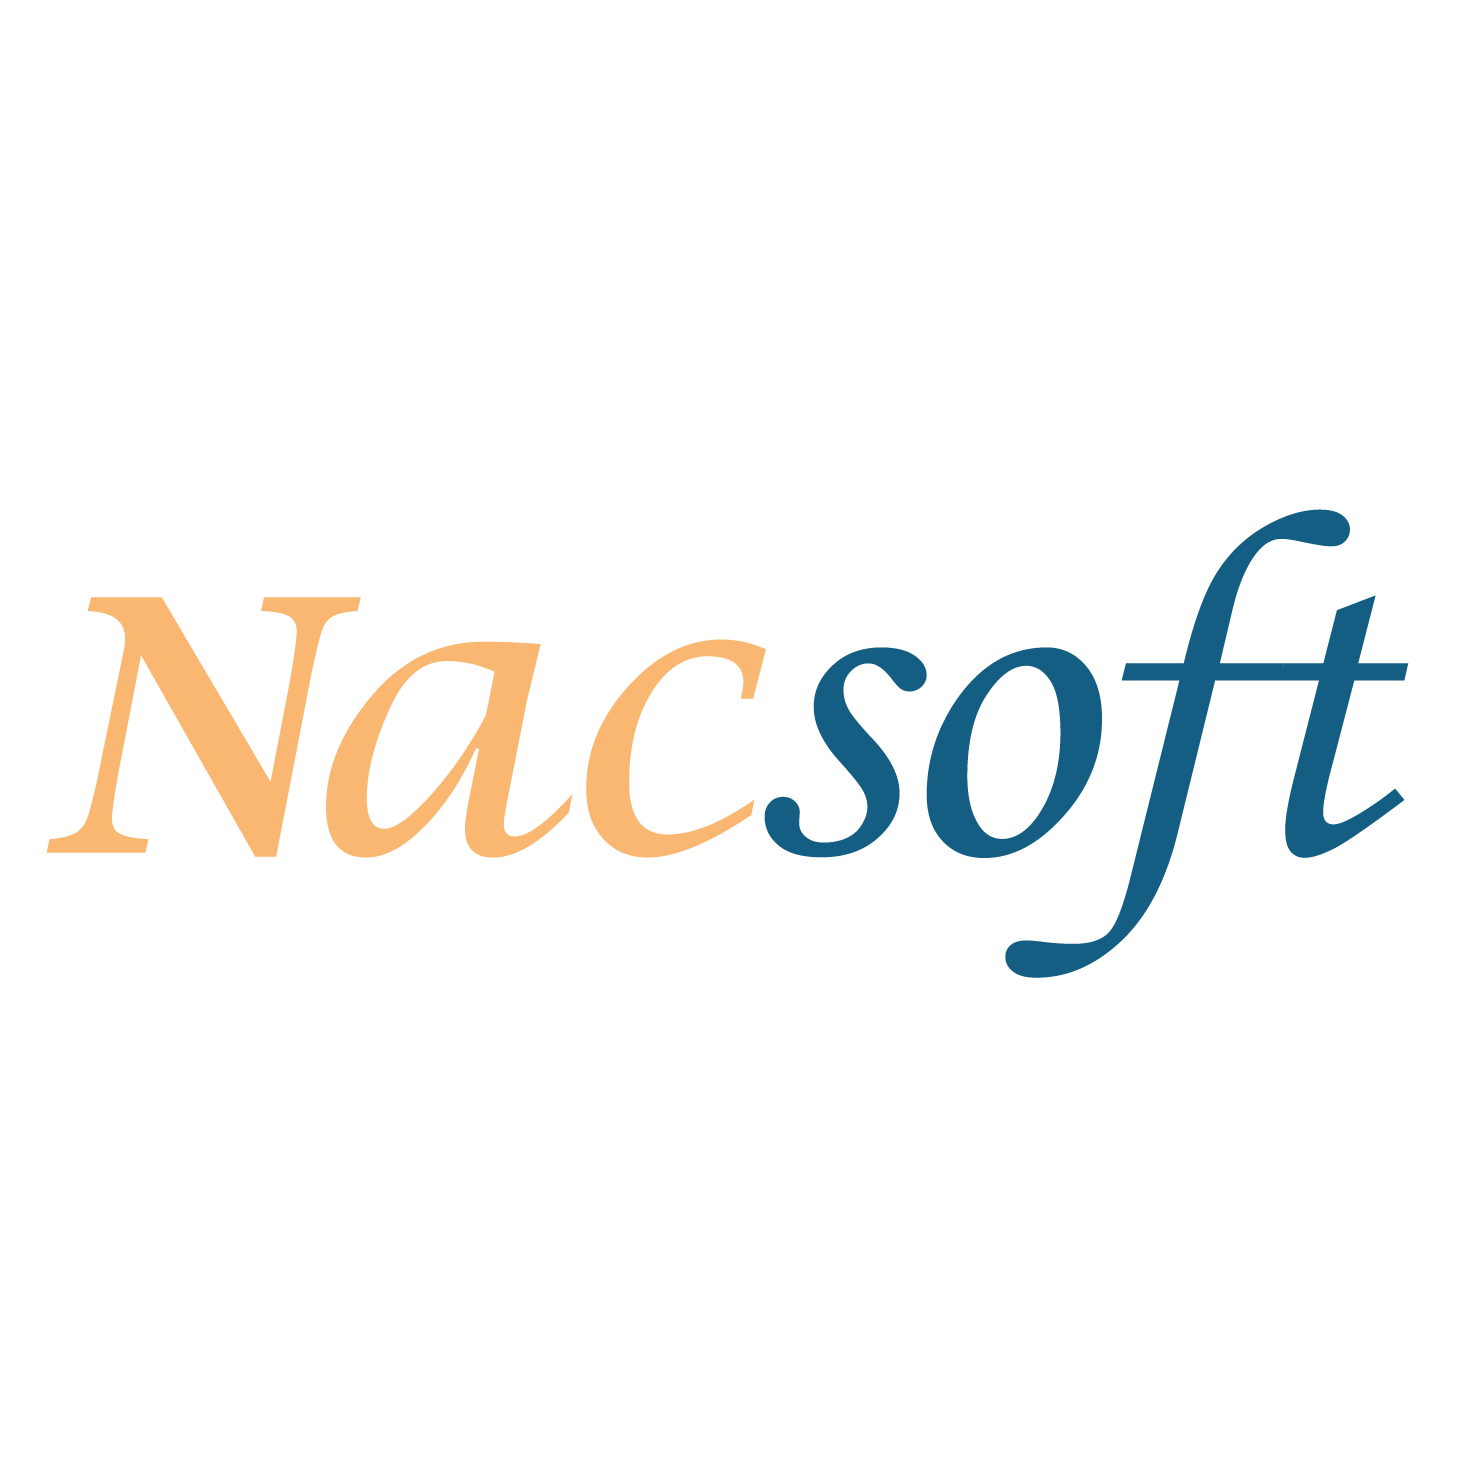 nacsoft-logo-big